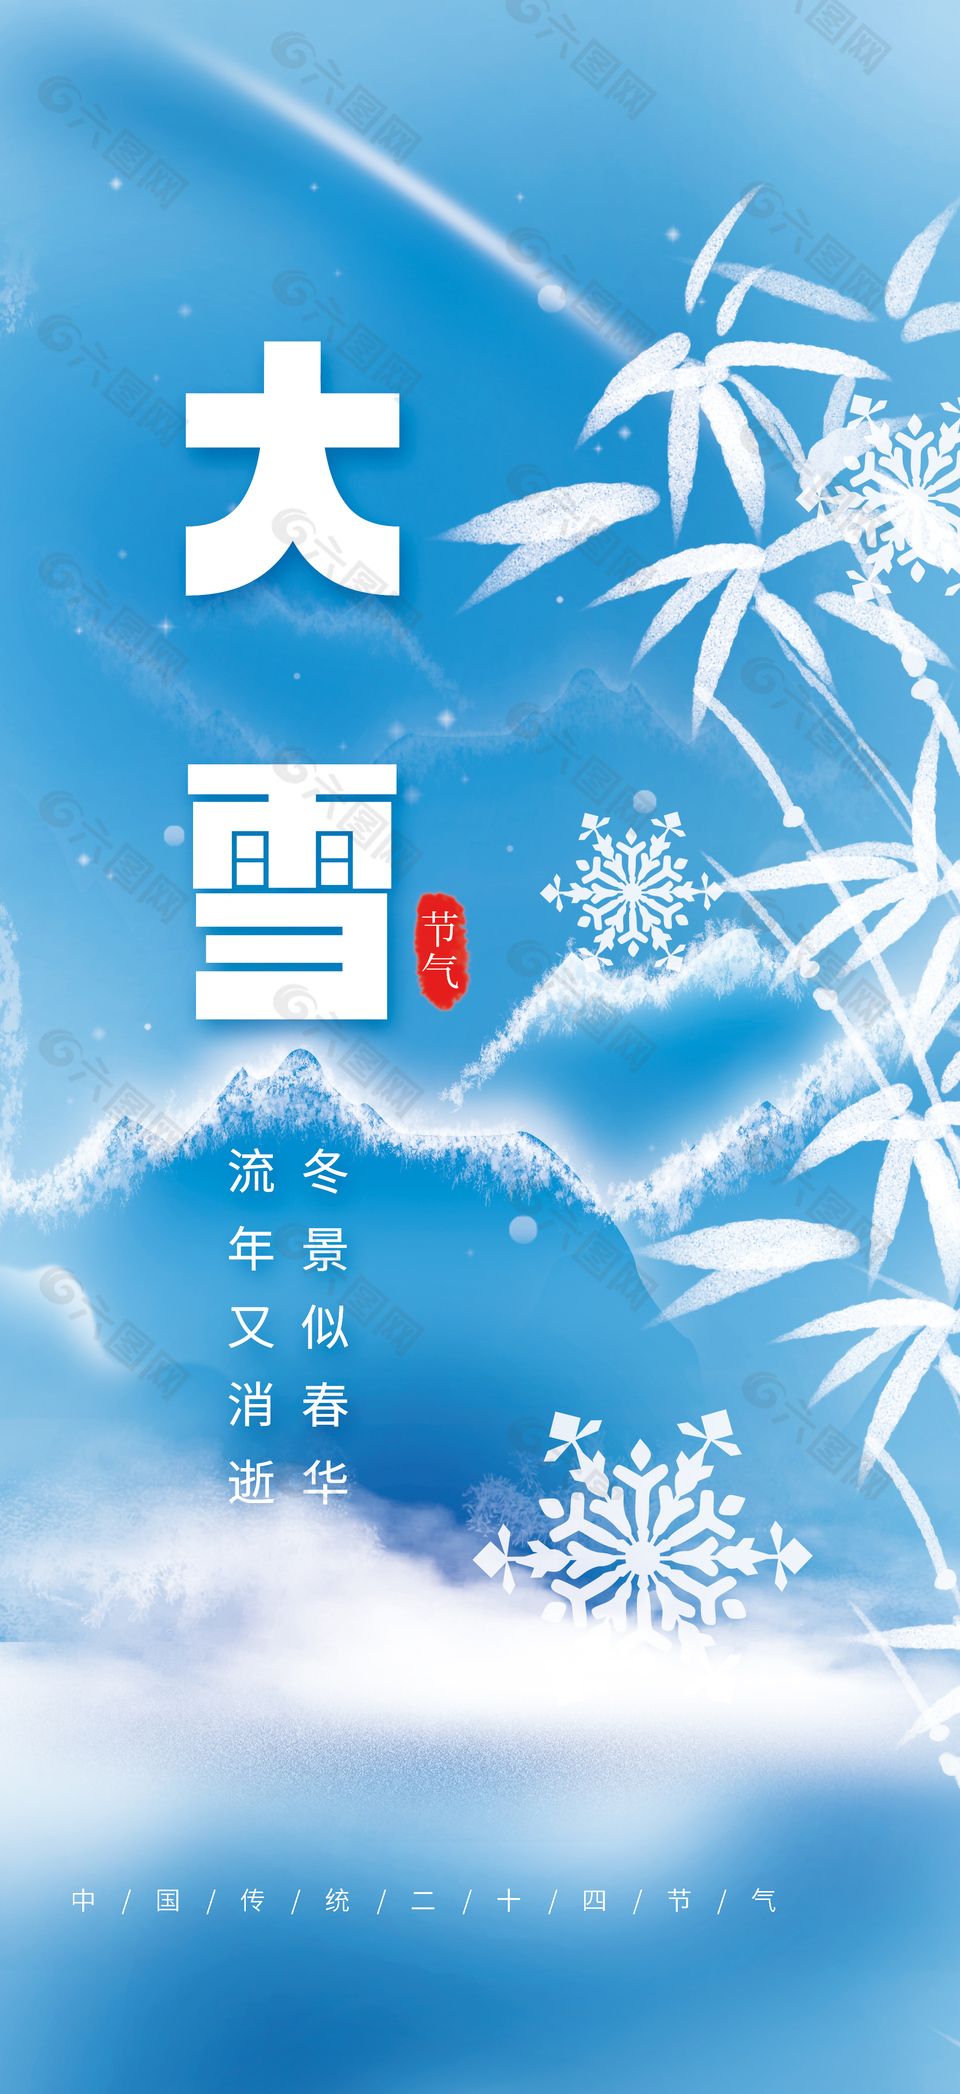 大雪寒凉蓝色概念性节气海报